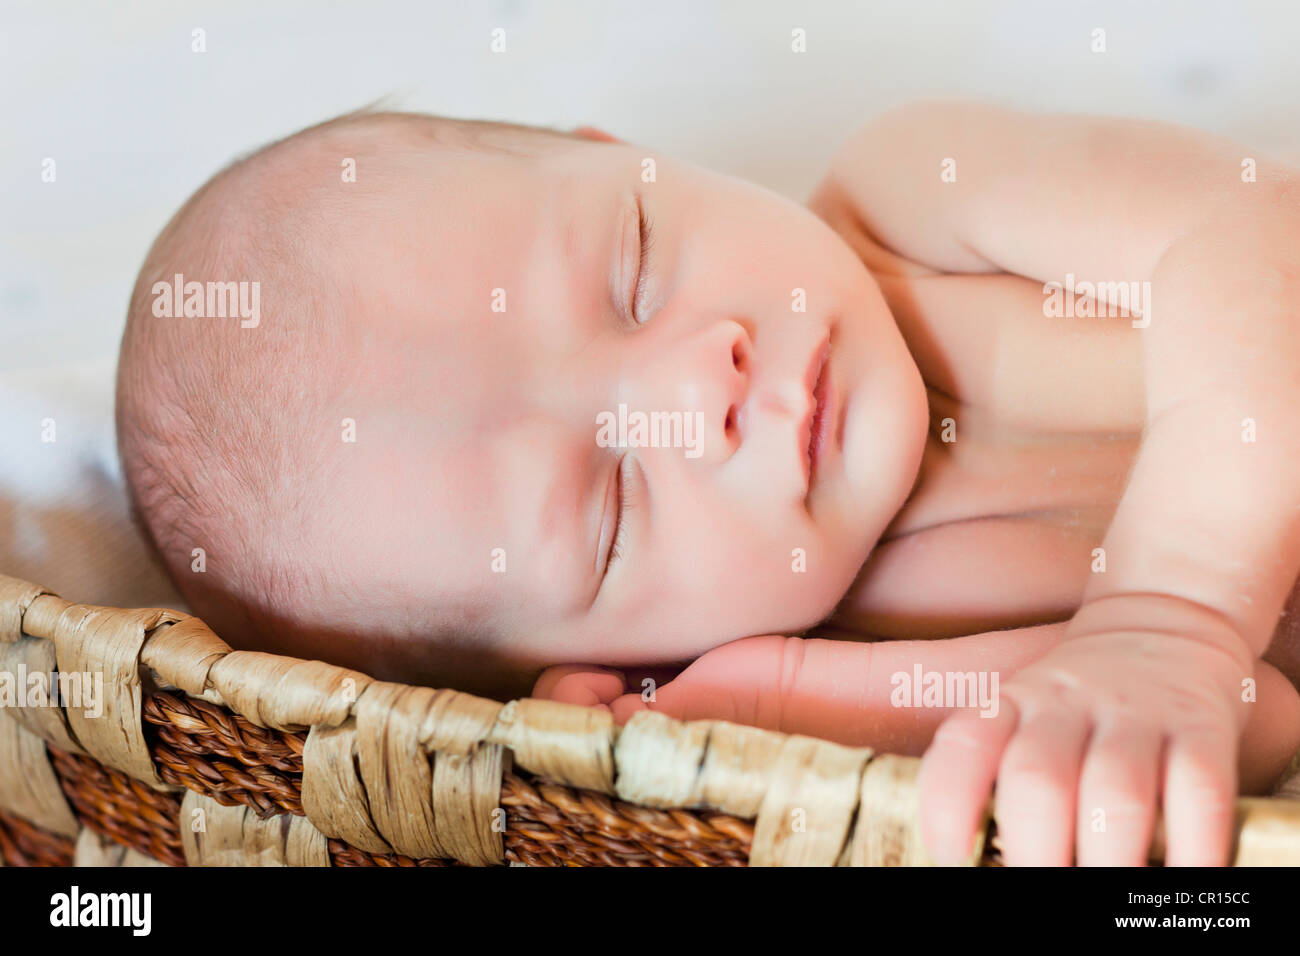 Bebé recién nacido, 3 semanas, durmiendo en una cesta Fotografía de stock -  Alamy